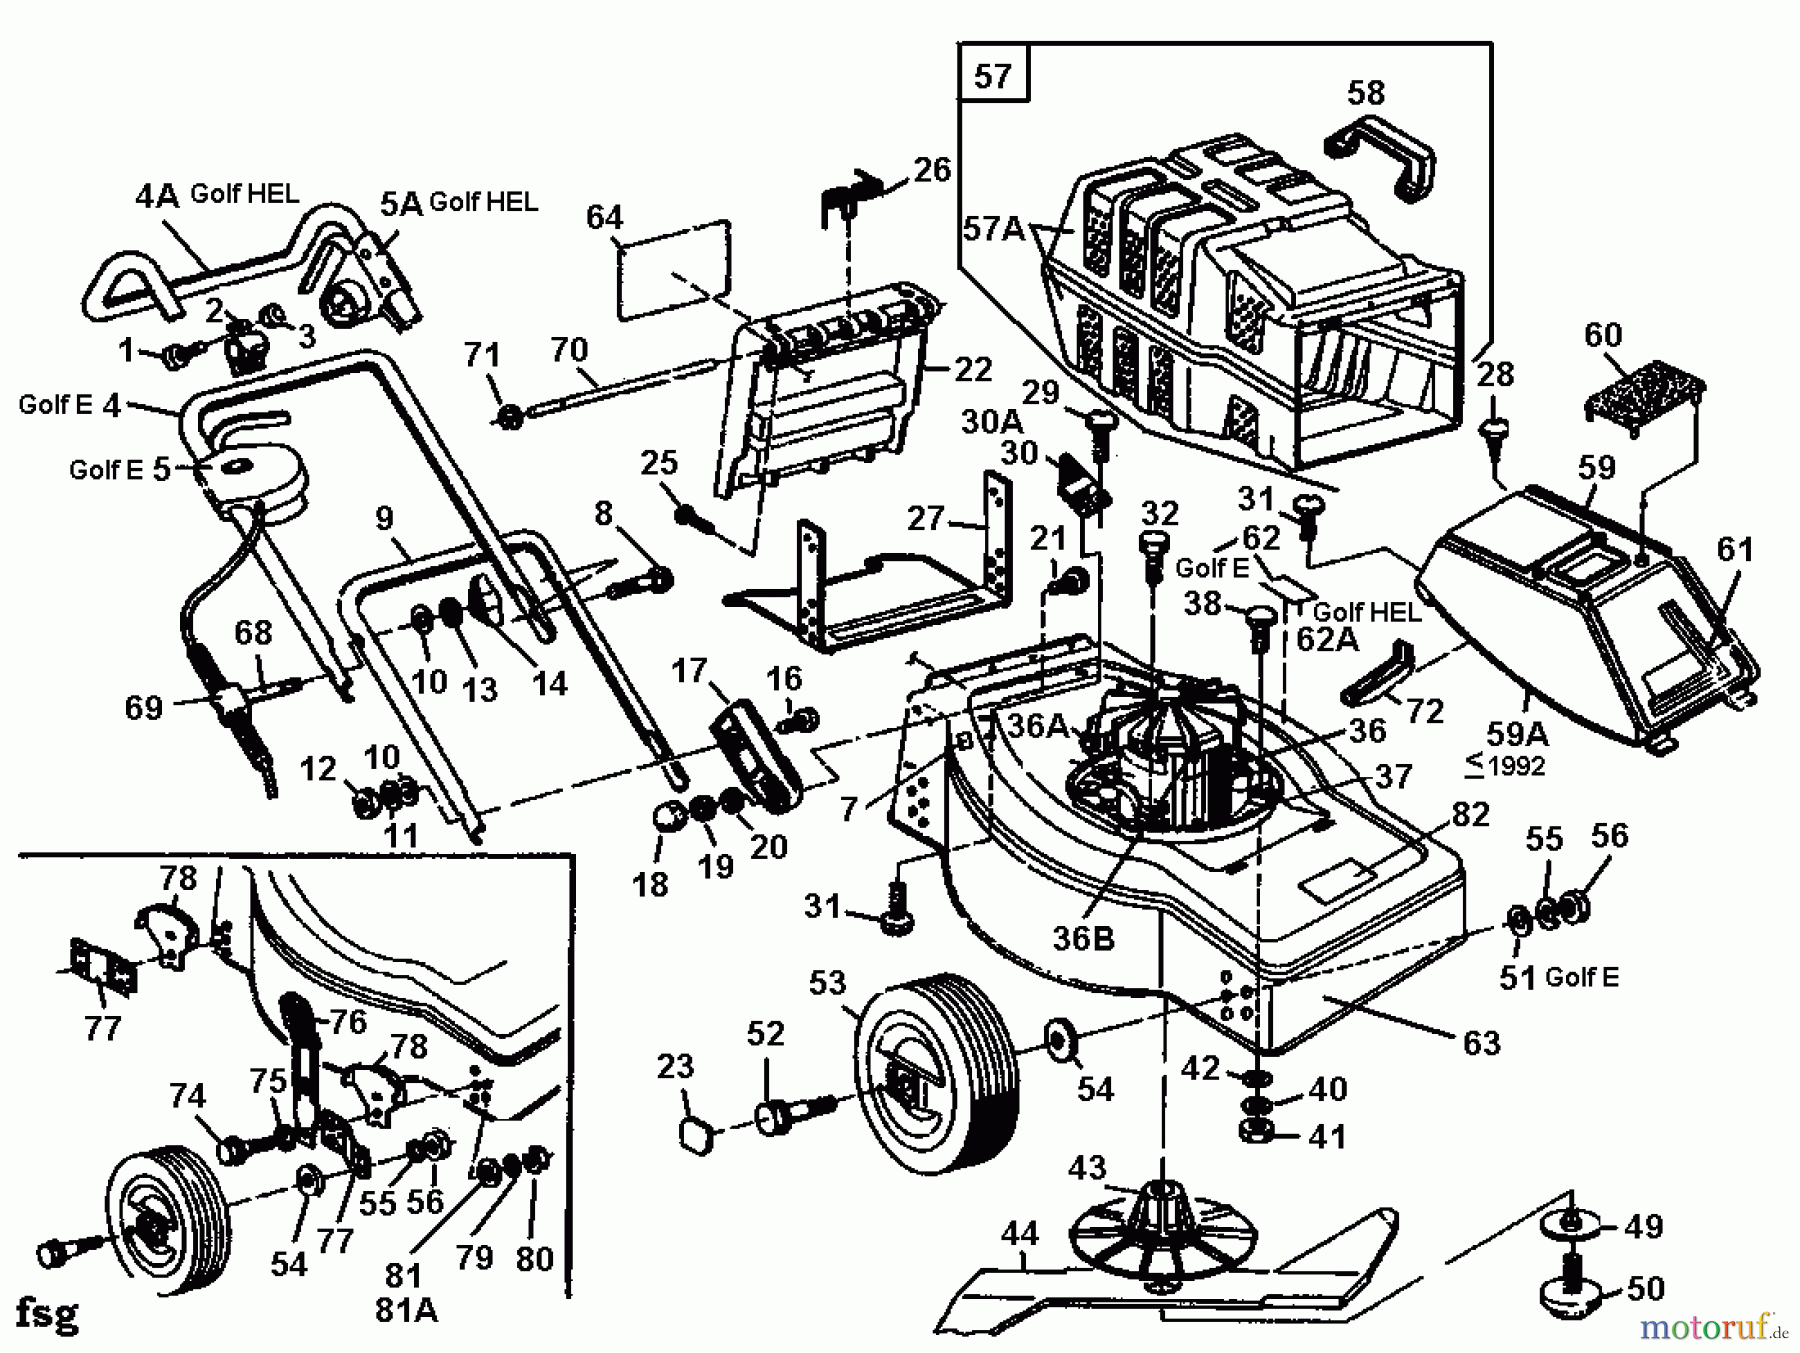  Golf Tondeuse électrique HEL 02881.07  (1992) Machine de base